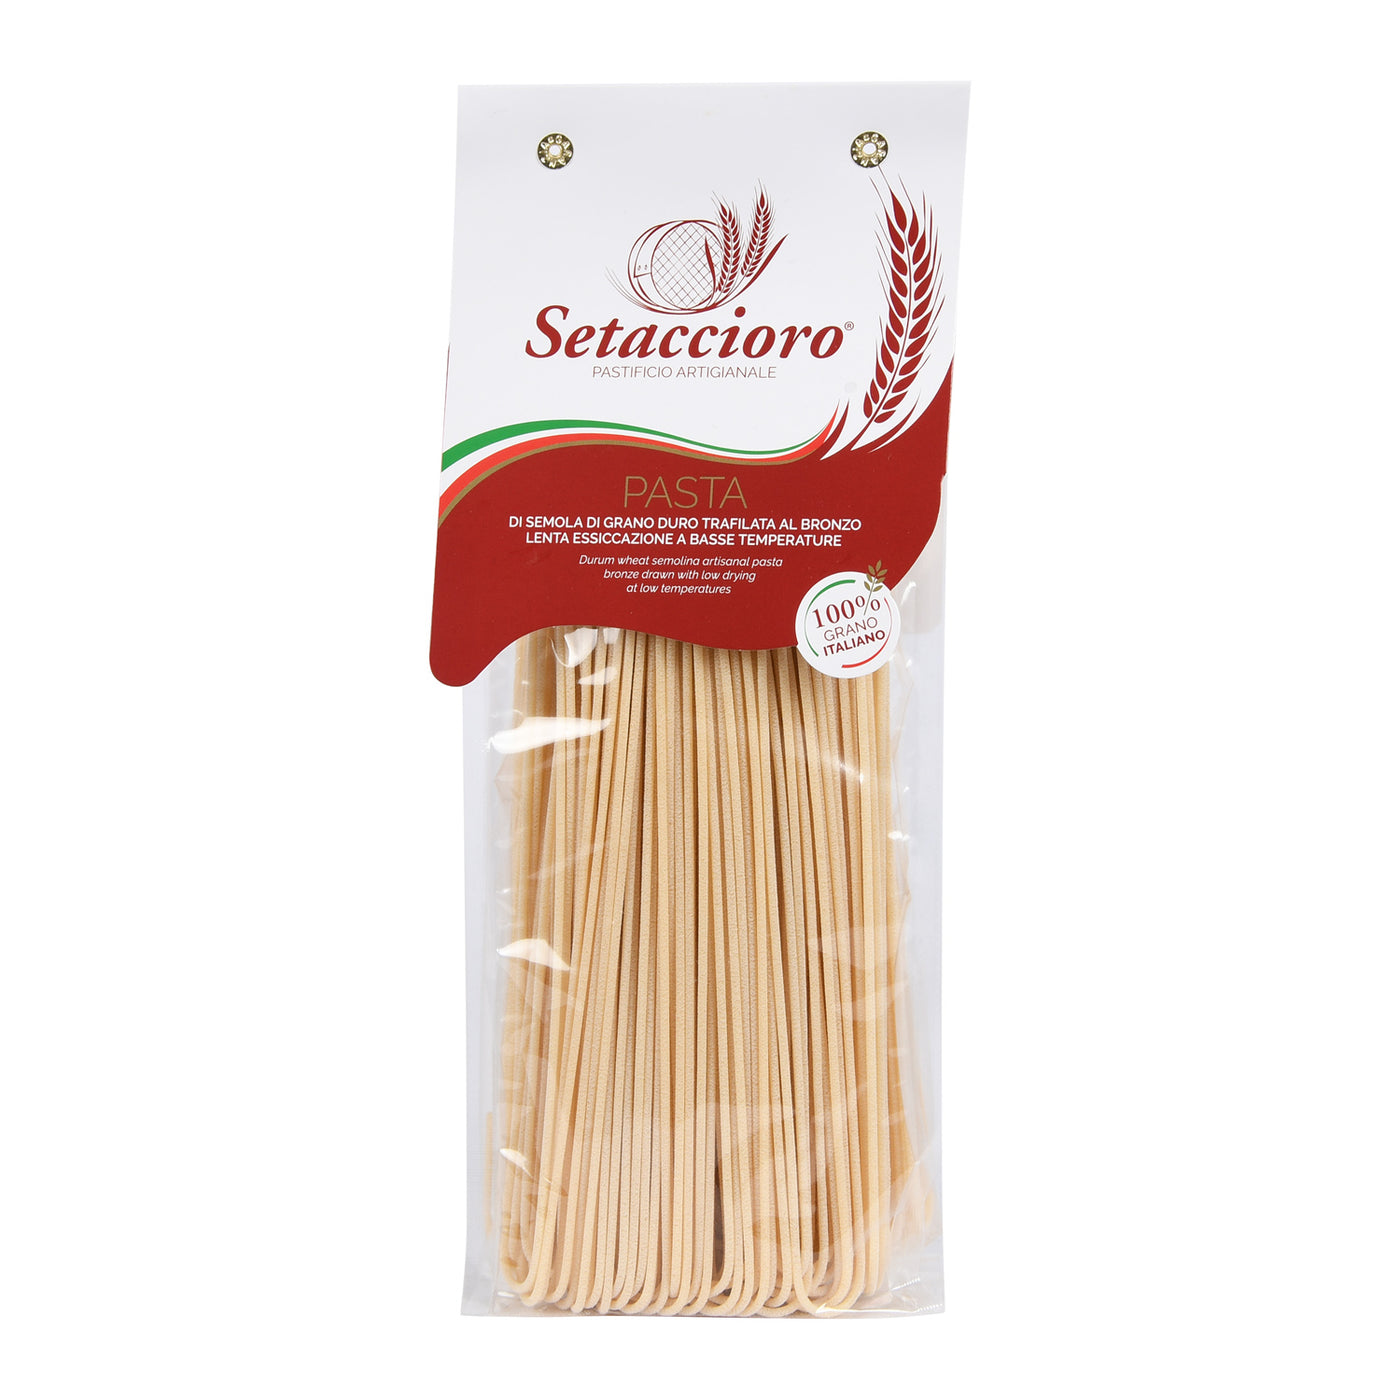 Setaccioro Pasta Spaghettoni